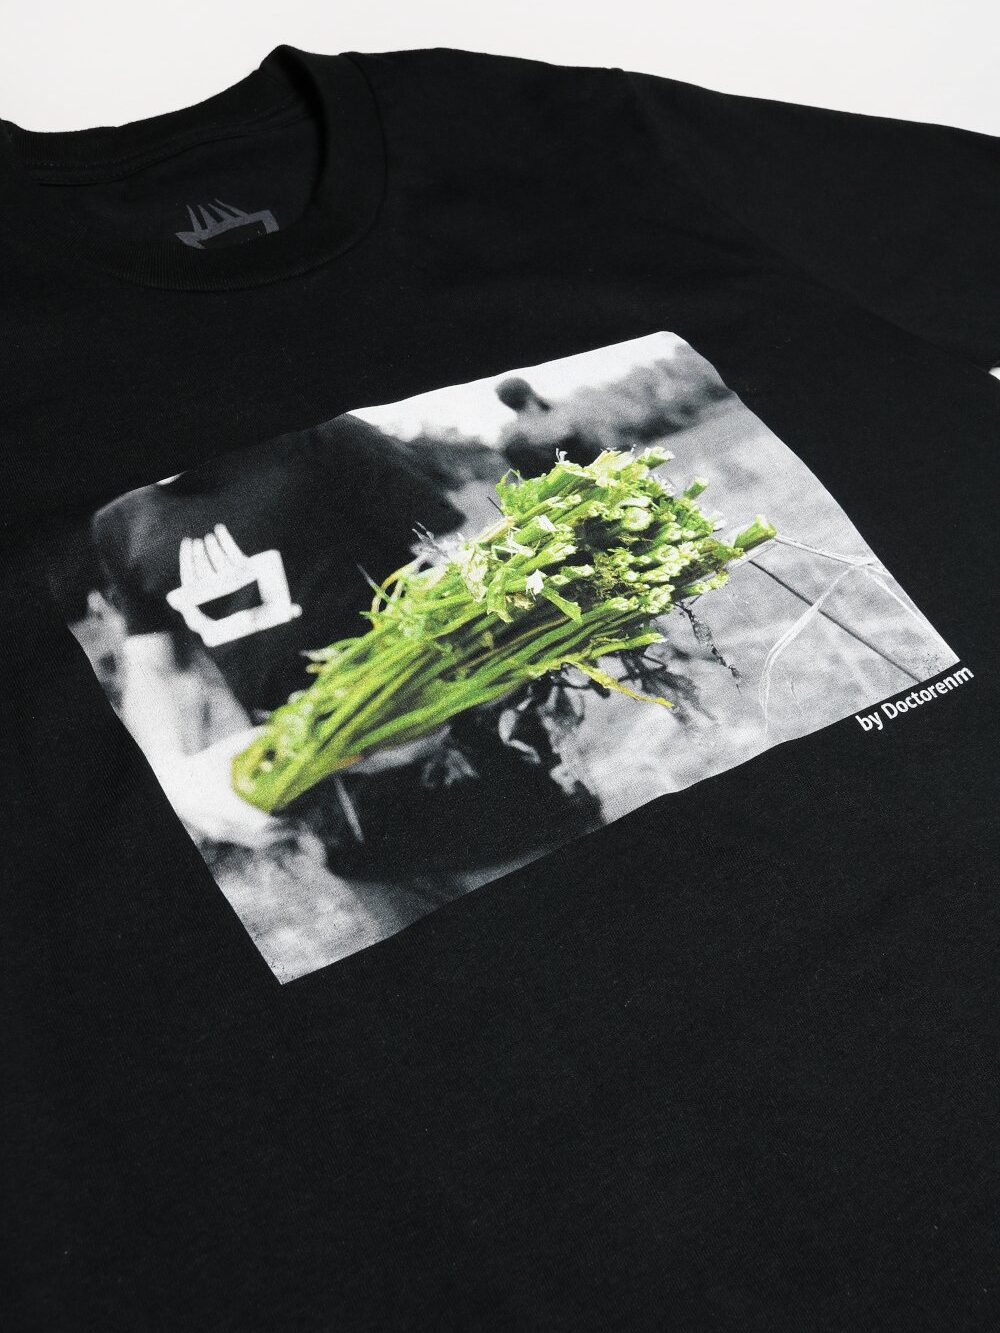 Camiseta mimaría hempworks hemp harvest impresión digital foto cosecha cáñamo